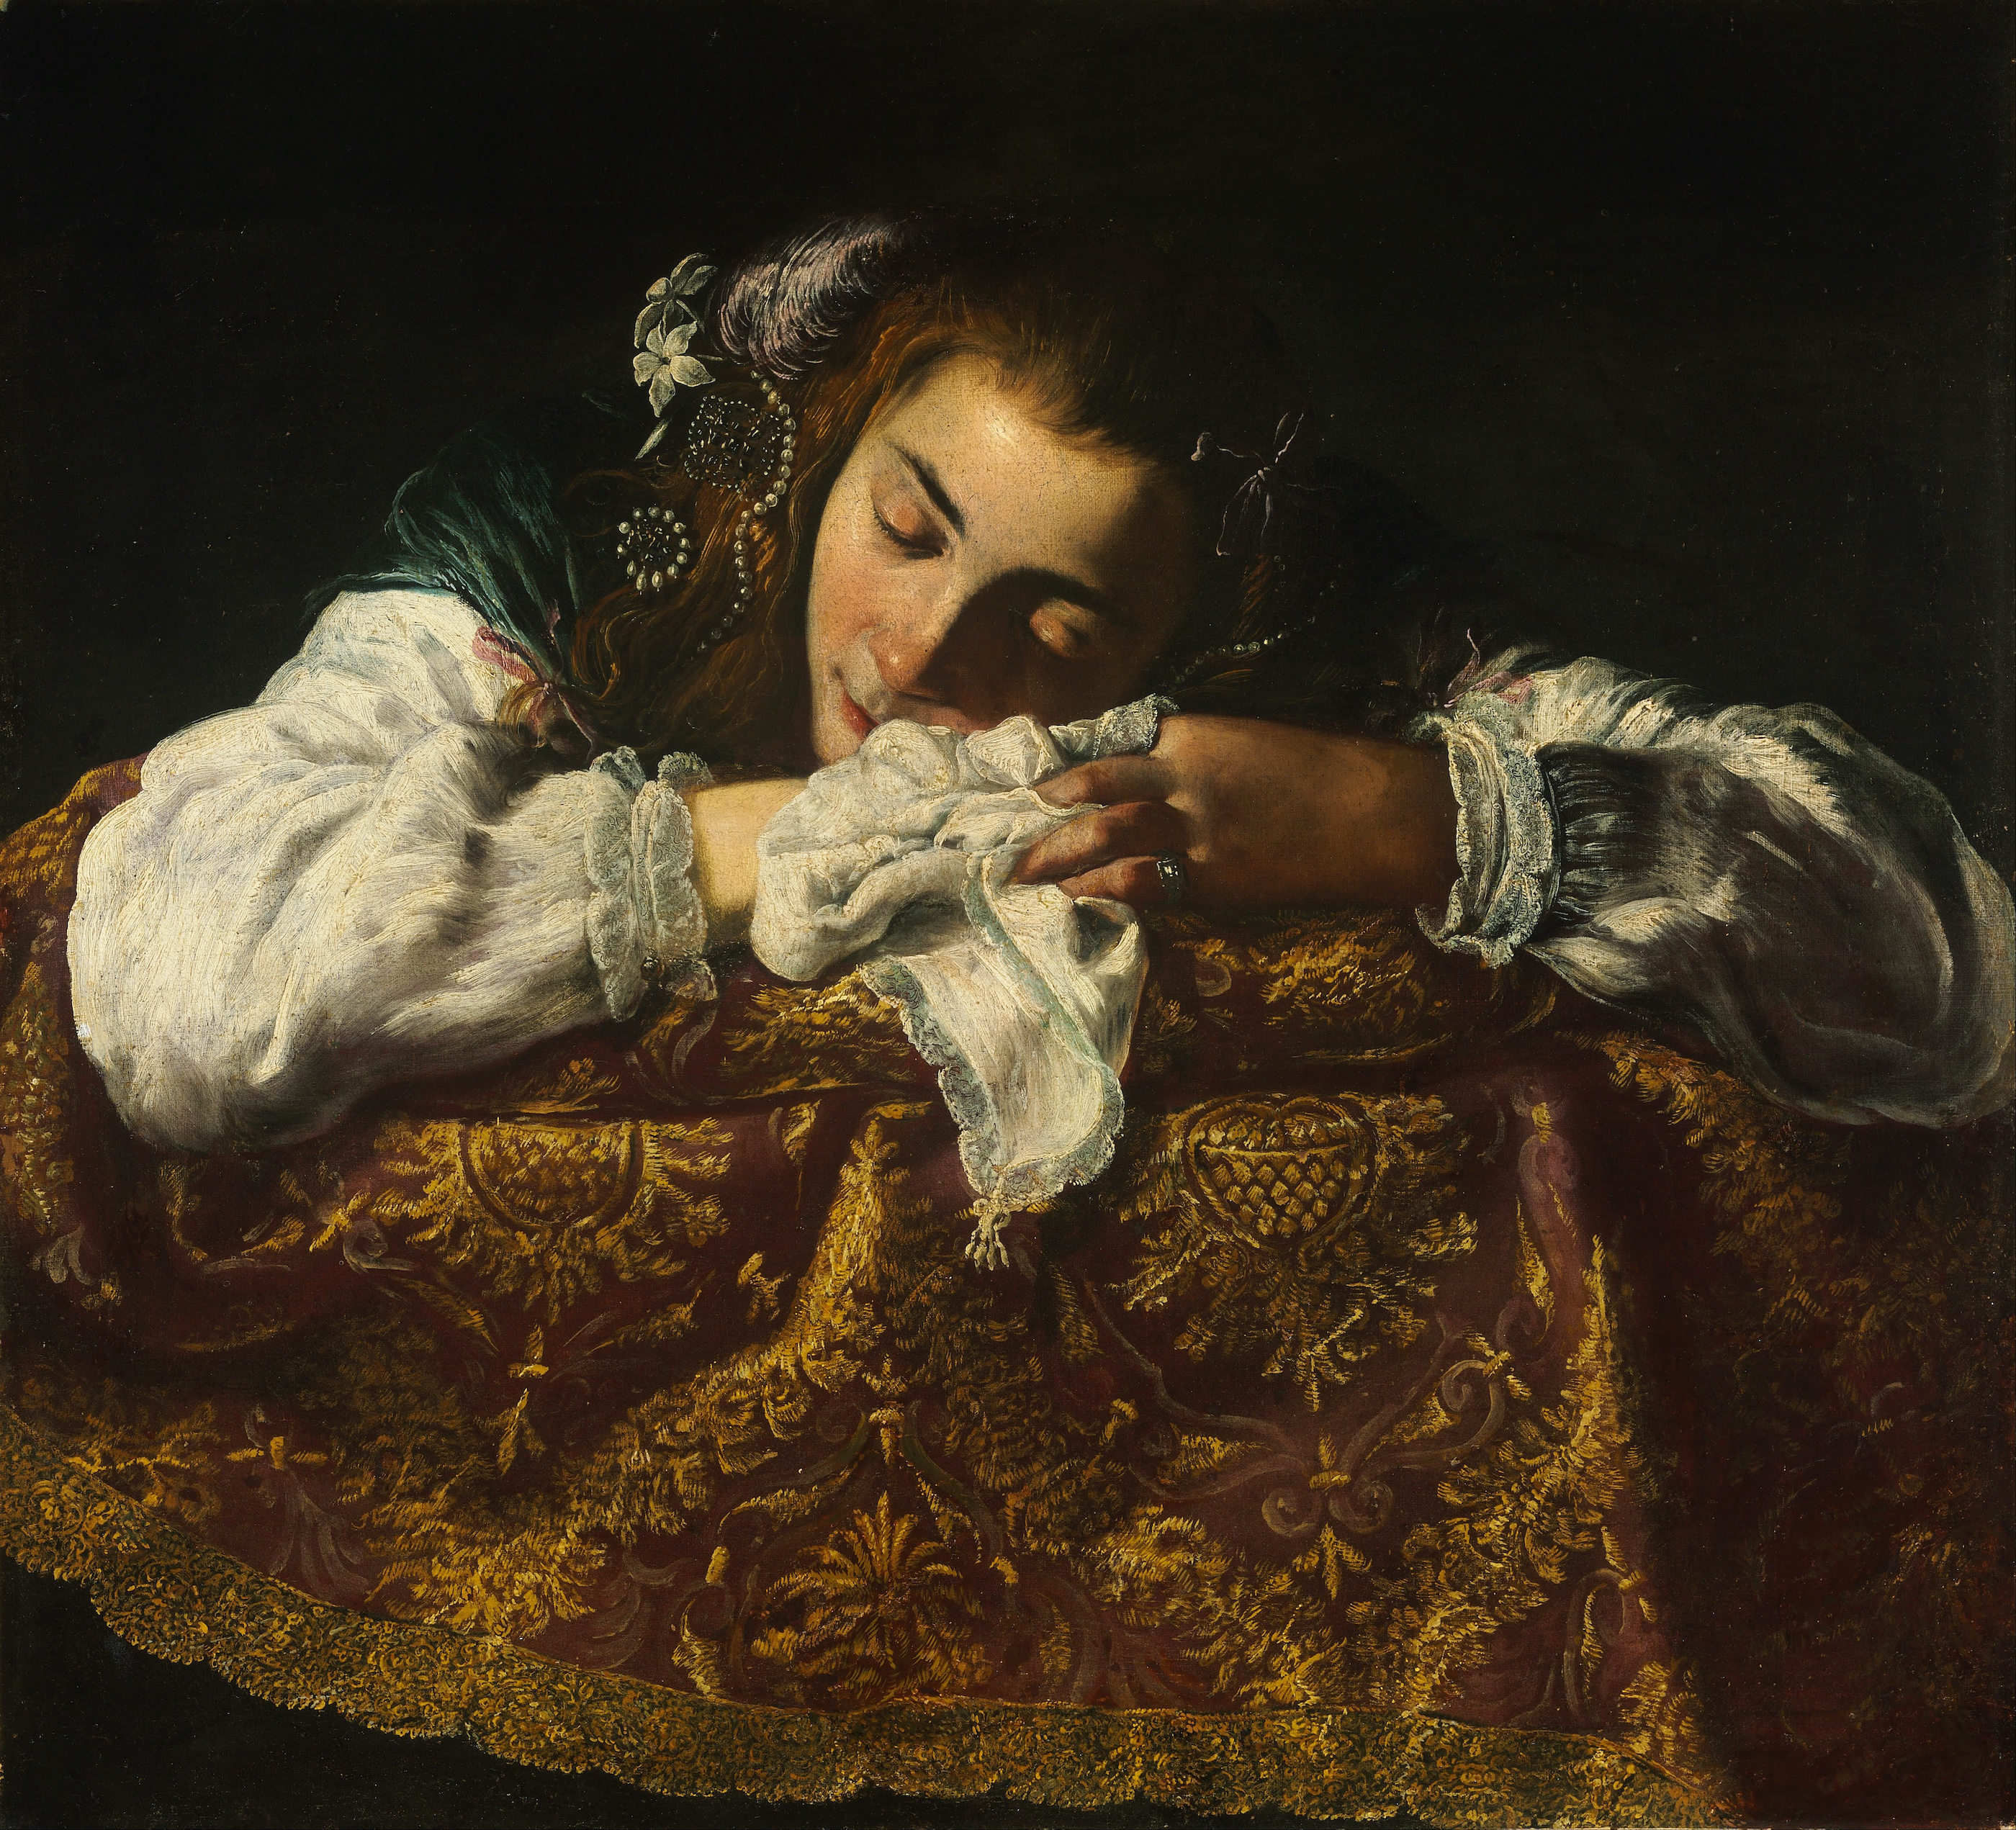 沉睡的女孩 by Unknown Artist - 1620 - 1622年 - 67.5 x 74 cm 